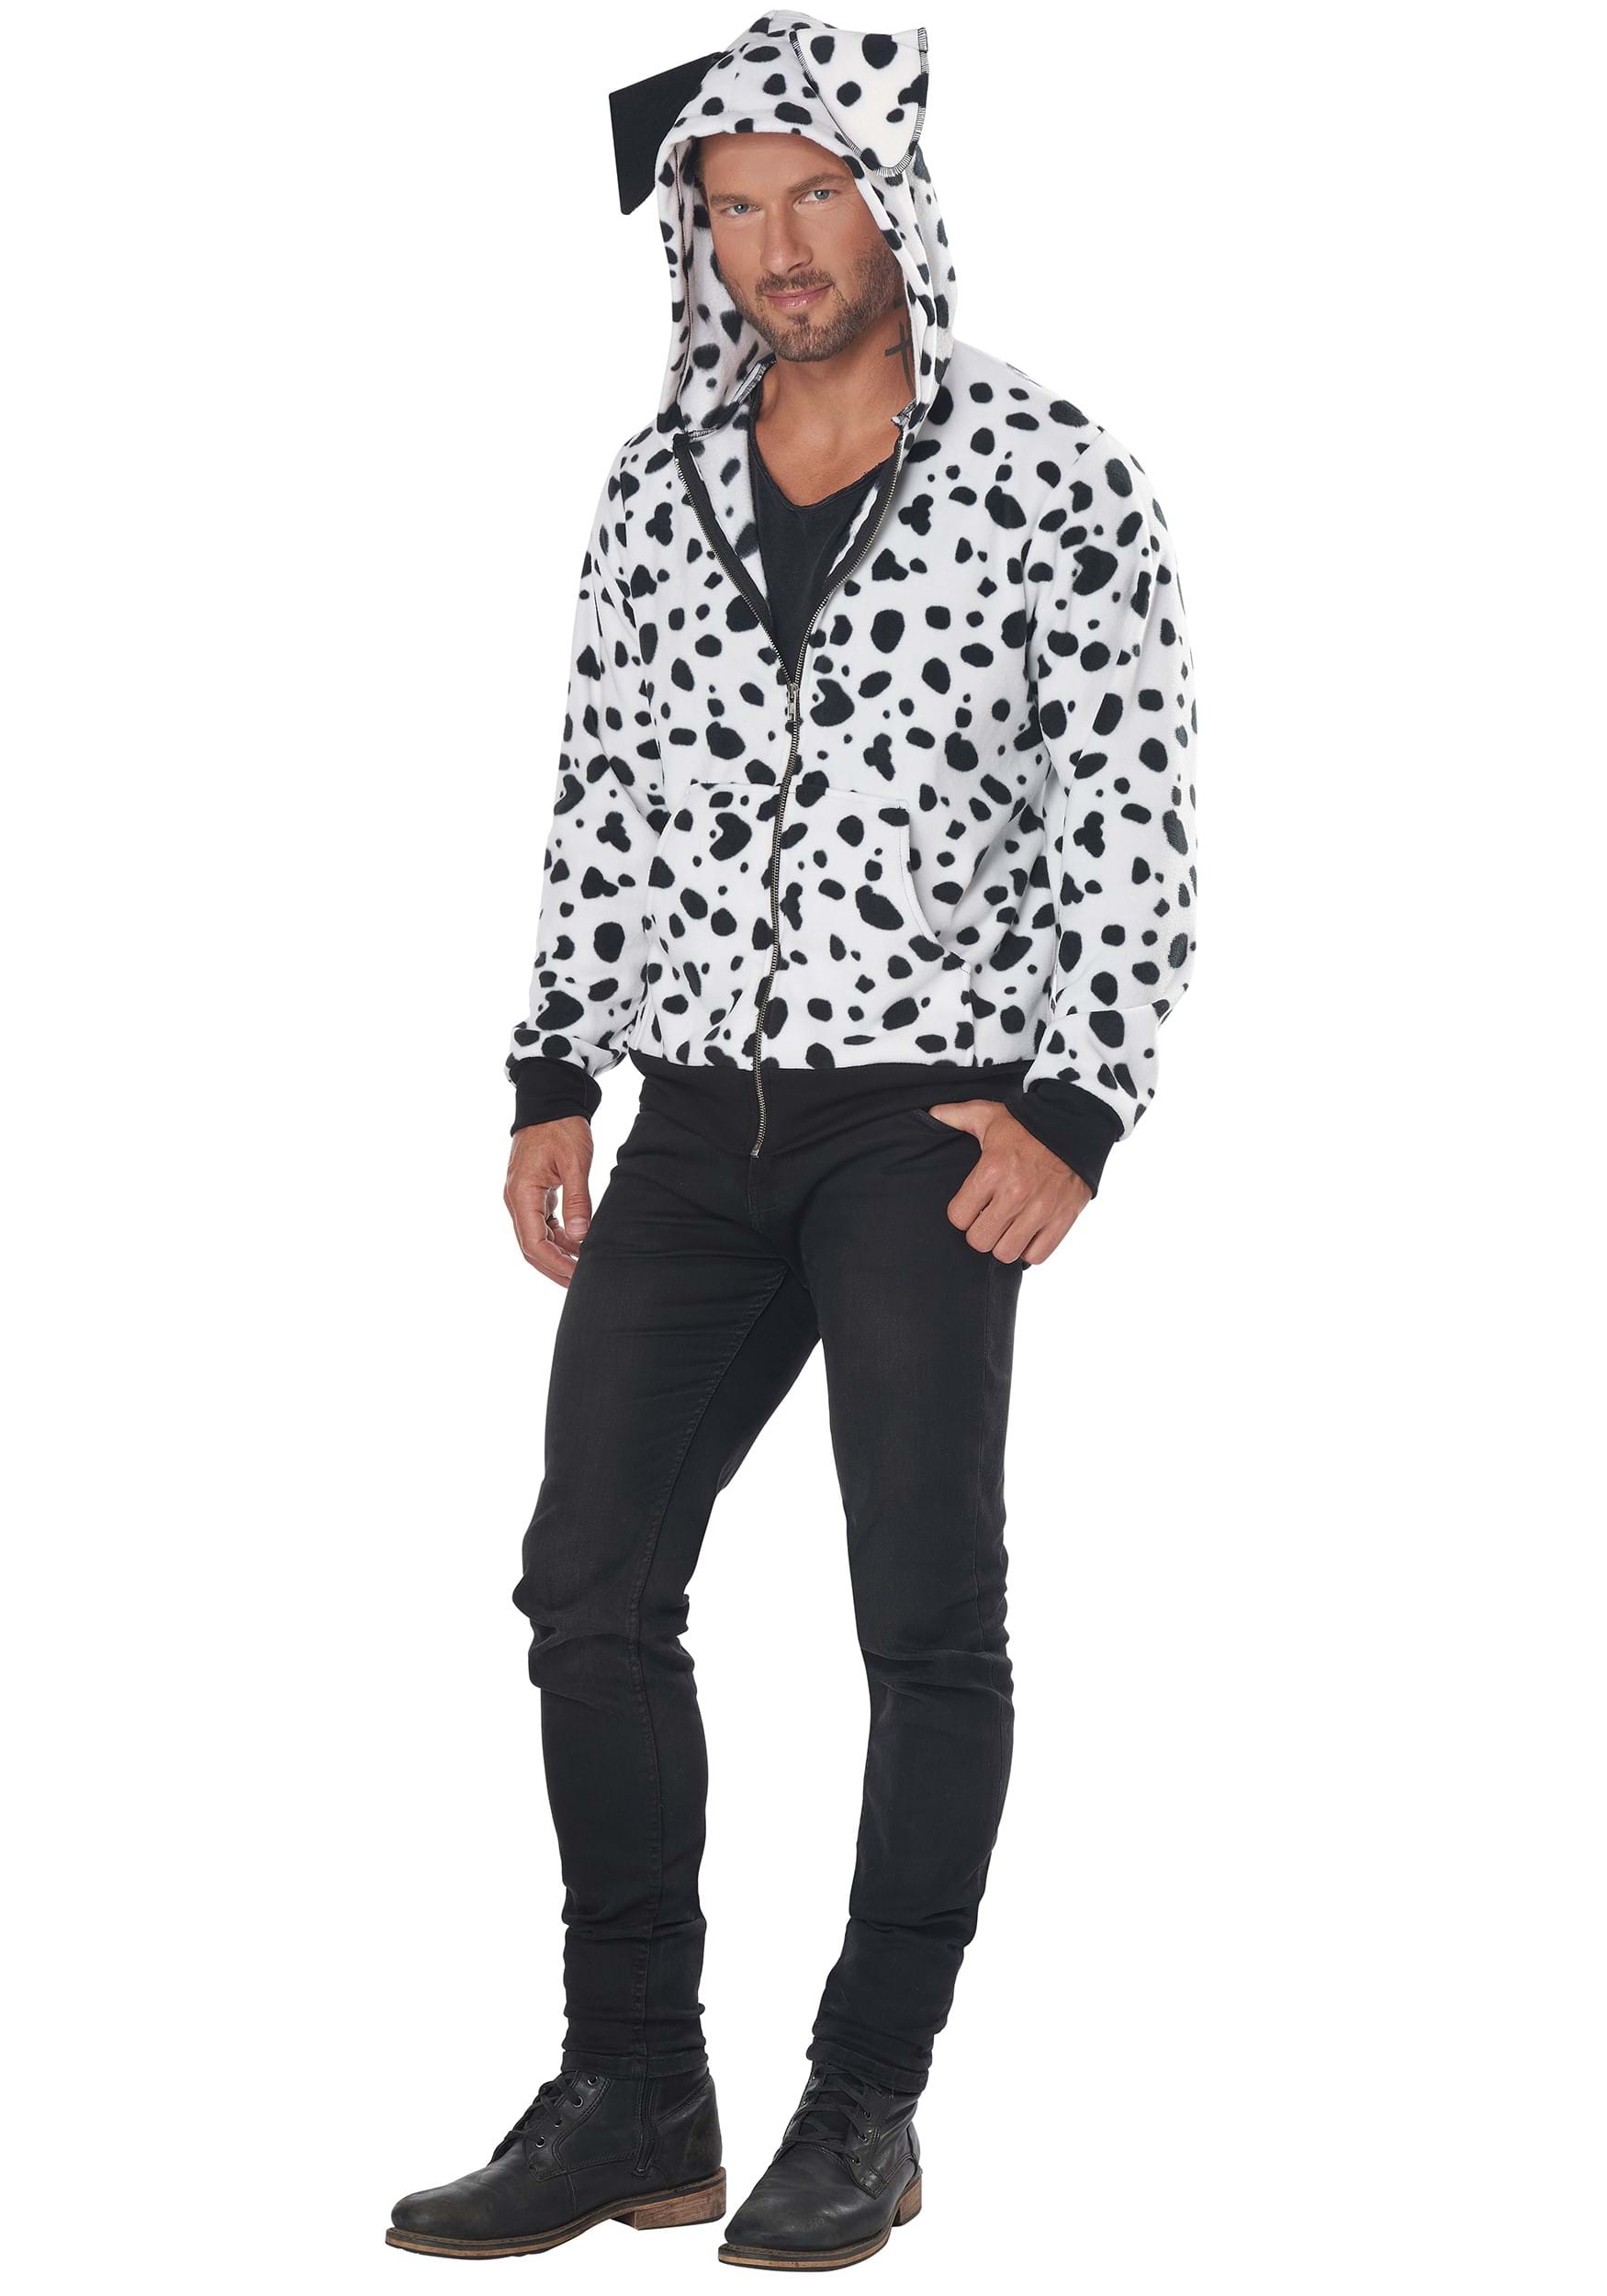 Dalmatian Men's Hoodie Costume